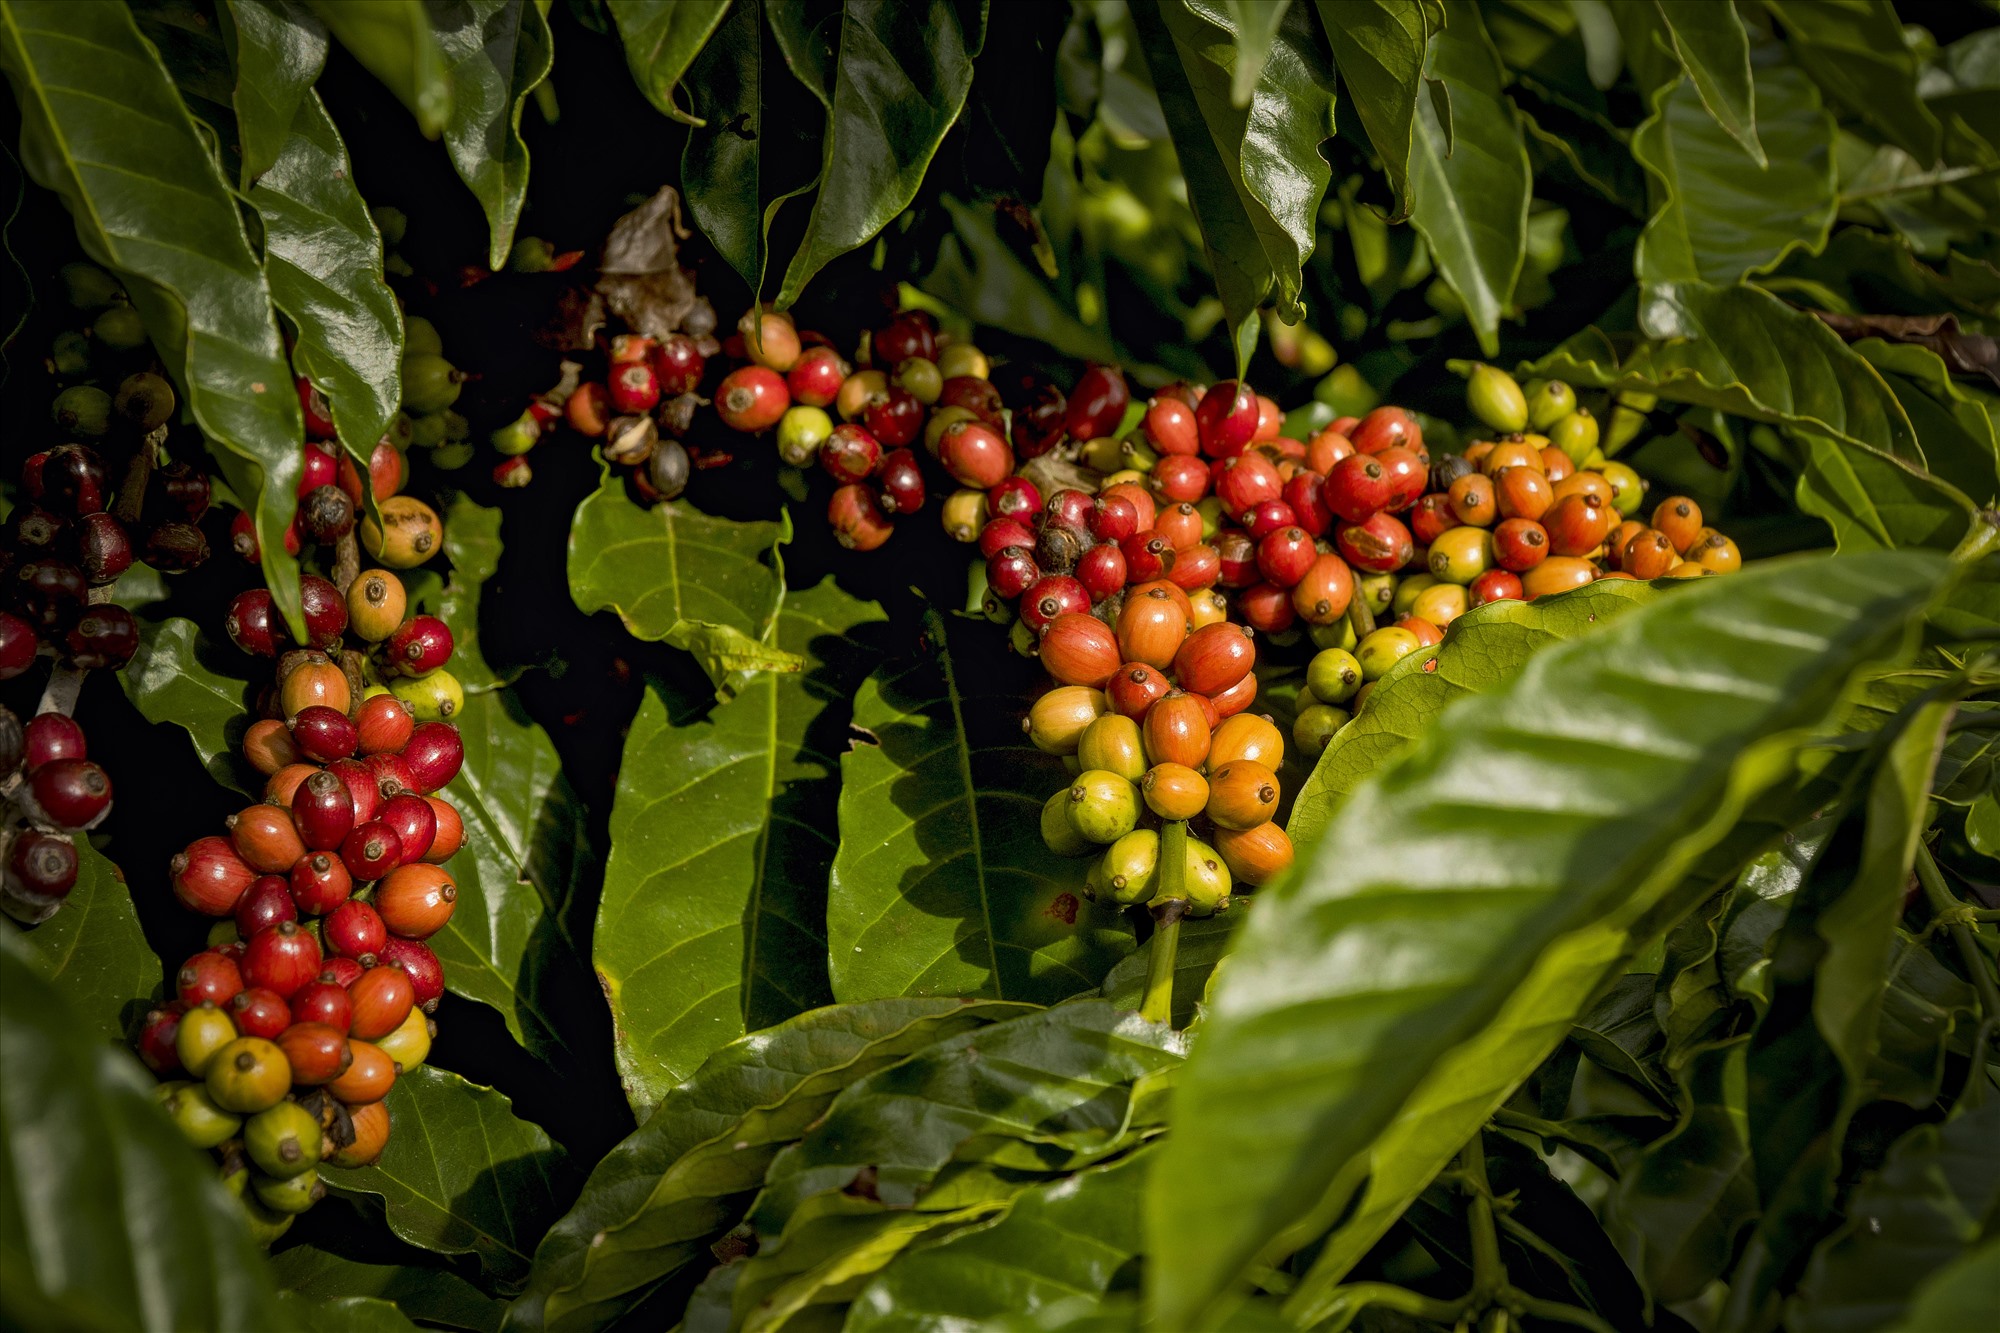 Giá cà phê tăng điên đảo, giao dịch "hỗn loạn", nhà xuất khẩu tiết lộ bị "lỗ khủng"- Ảnh 4.